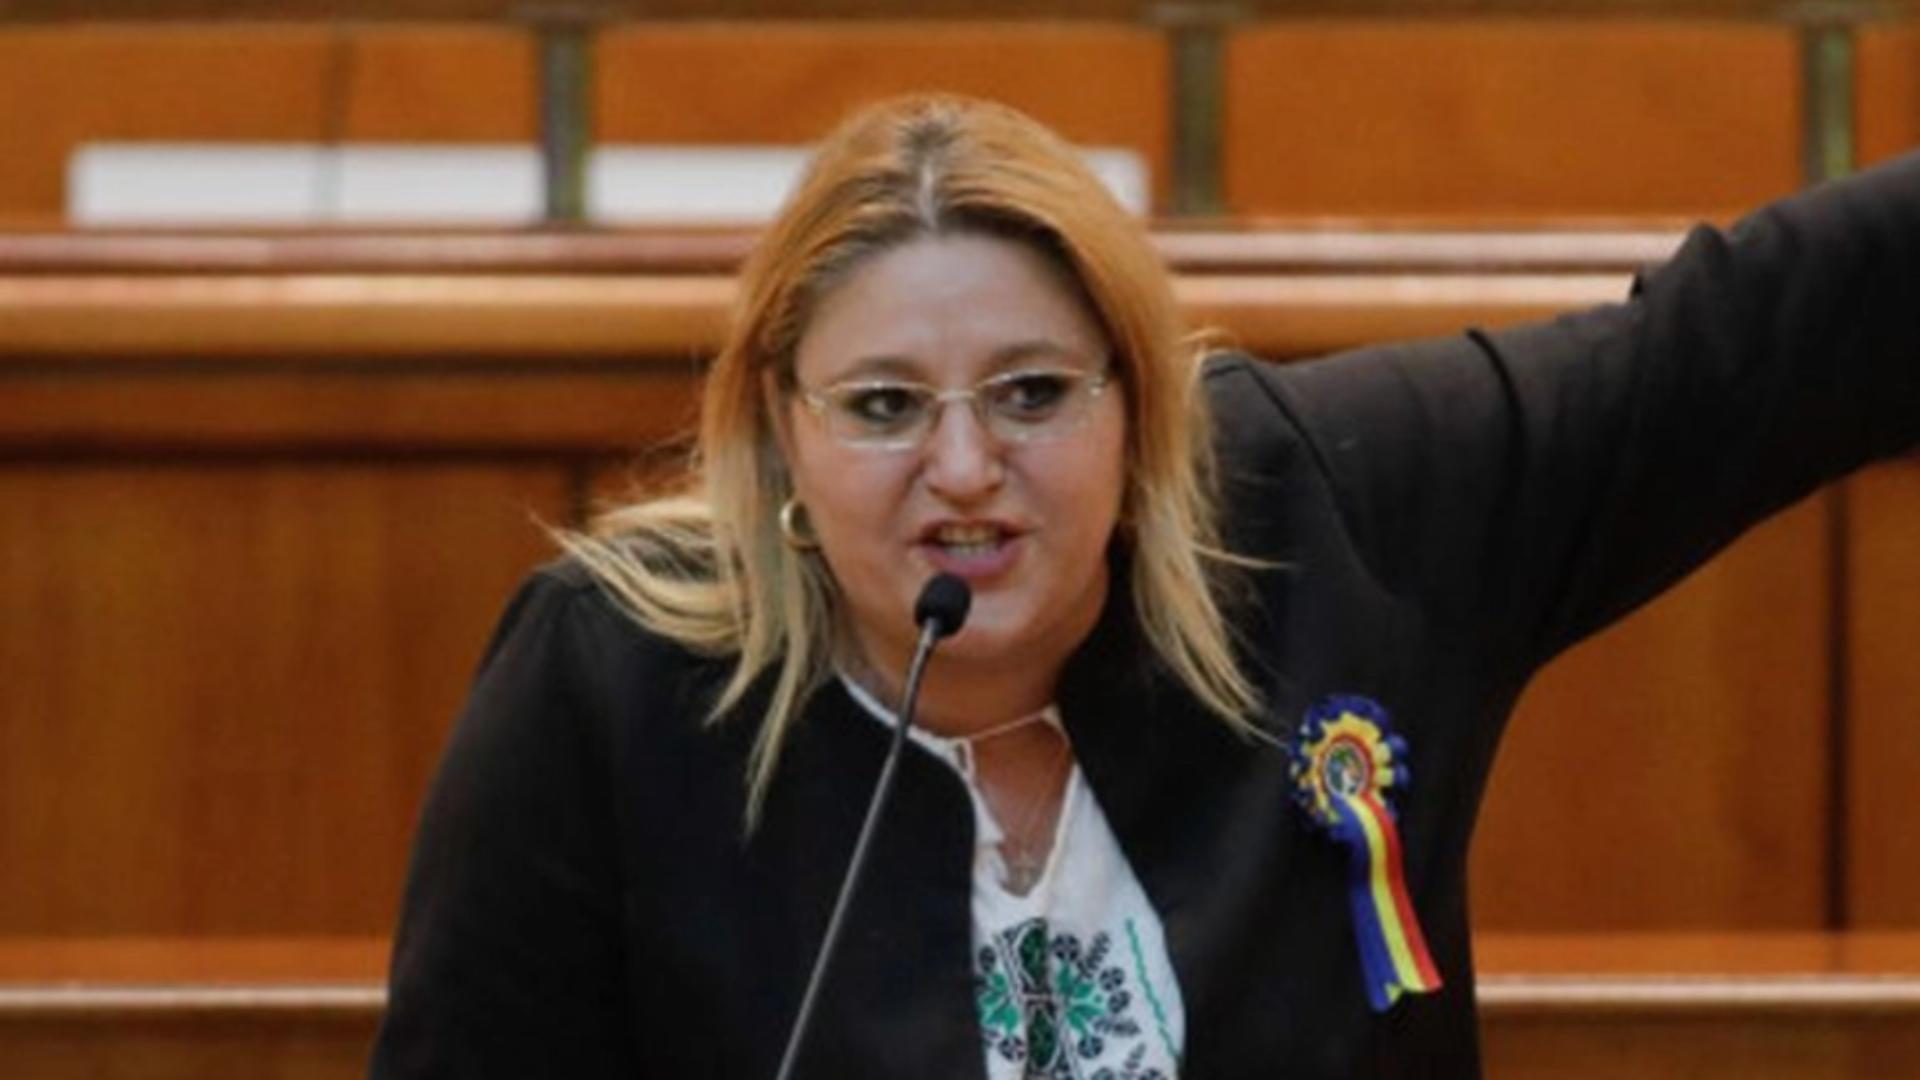 Diana Șoșoacă mitraliază toți candidații la președinție: Simion – măscărici, Geoană – un muribund politic, Kovesi – trădătoare de țară